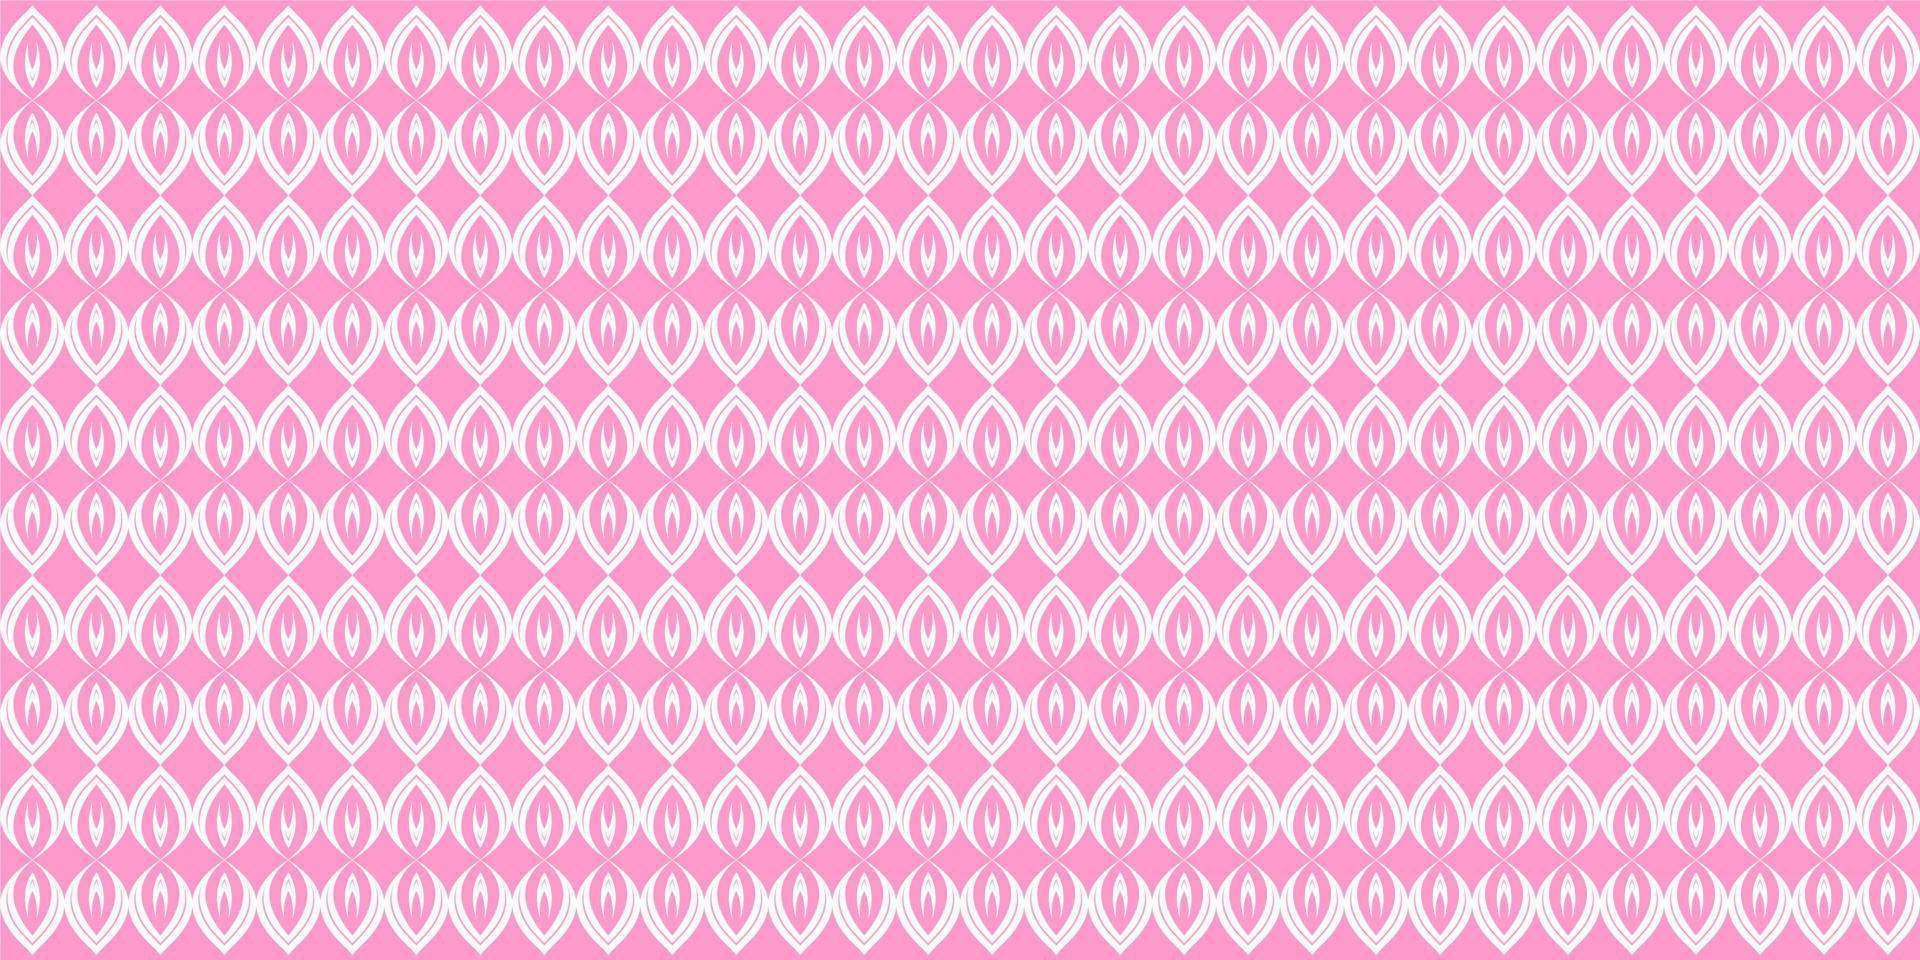 Blätter Muster Vektor Hintergrund rosa. kostenloser Vektor